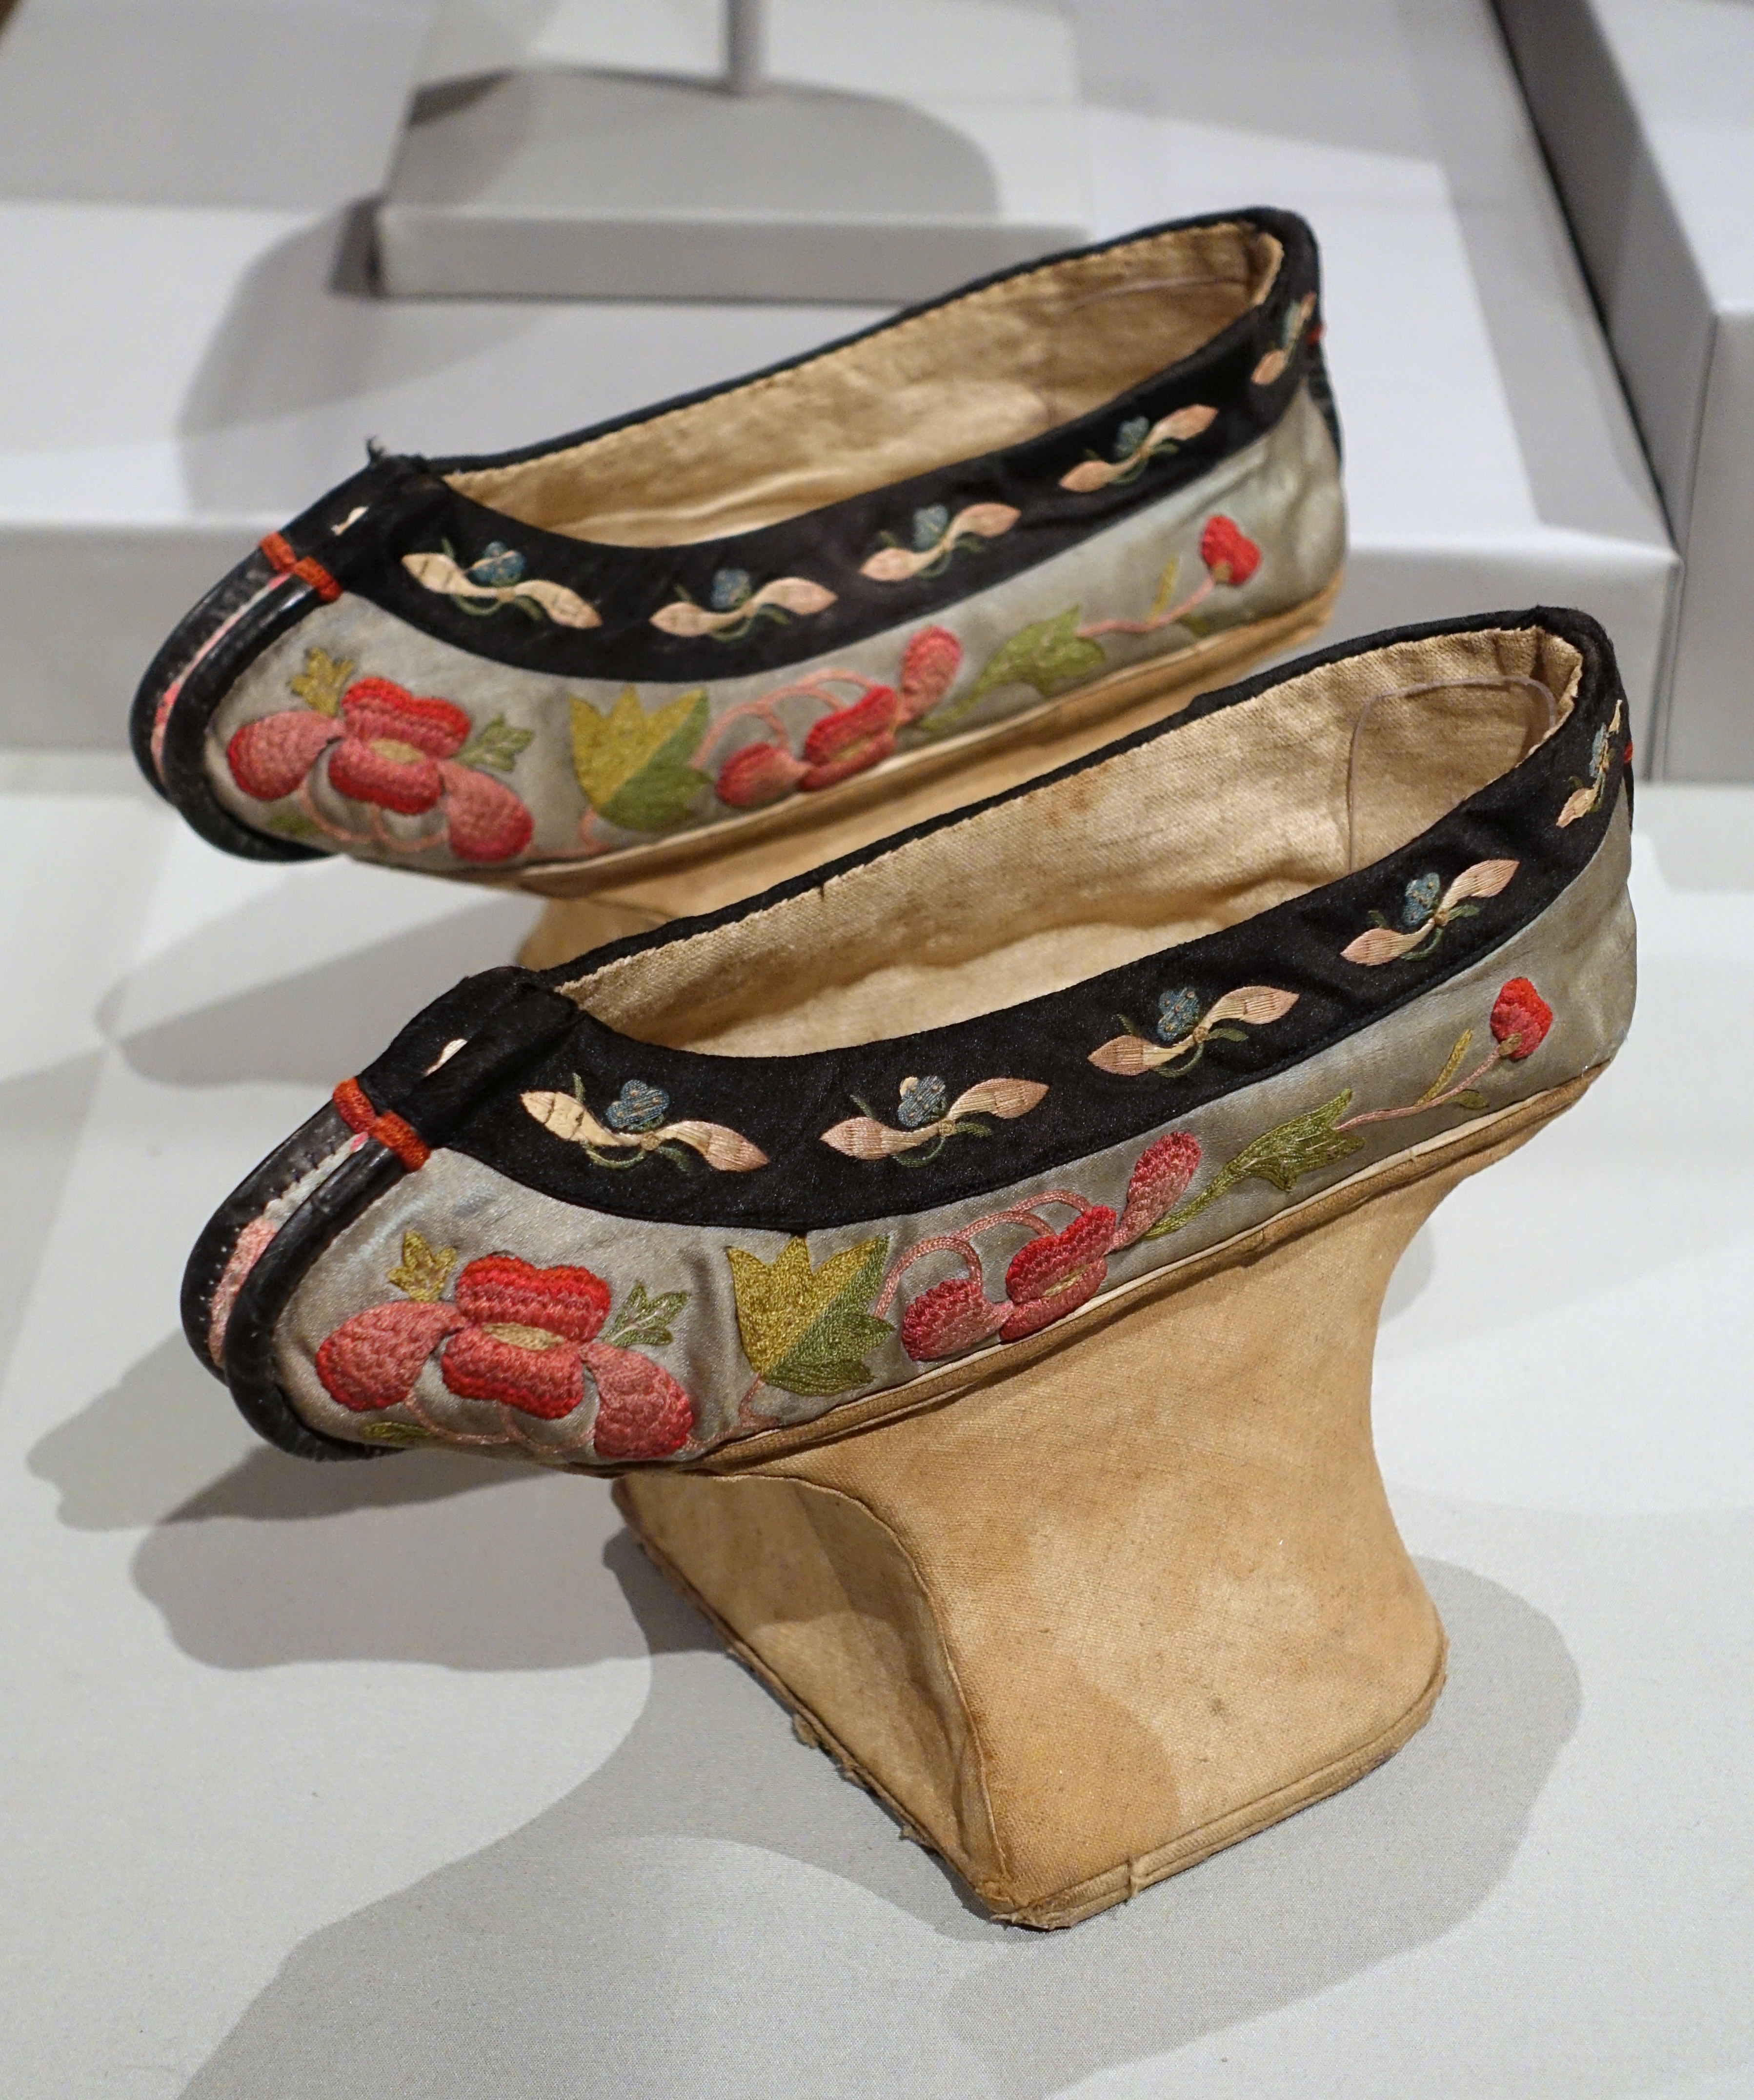 Manchu platform shoes - Wikipedia